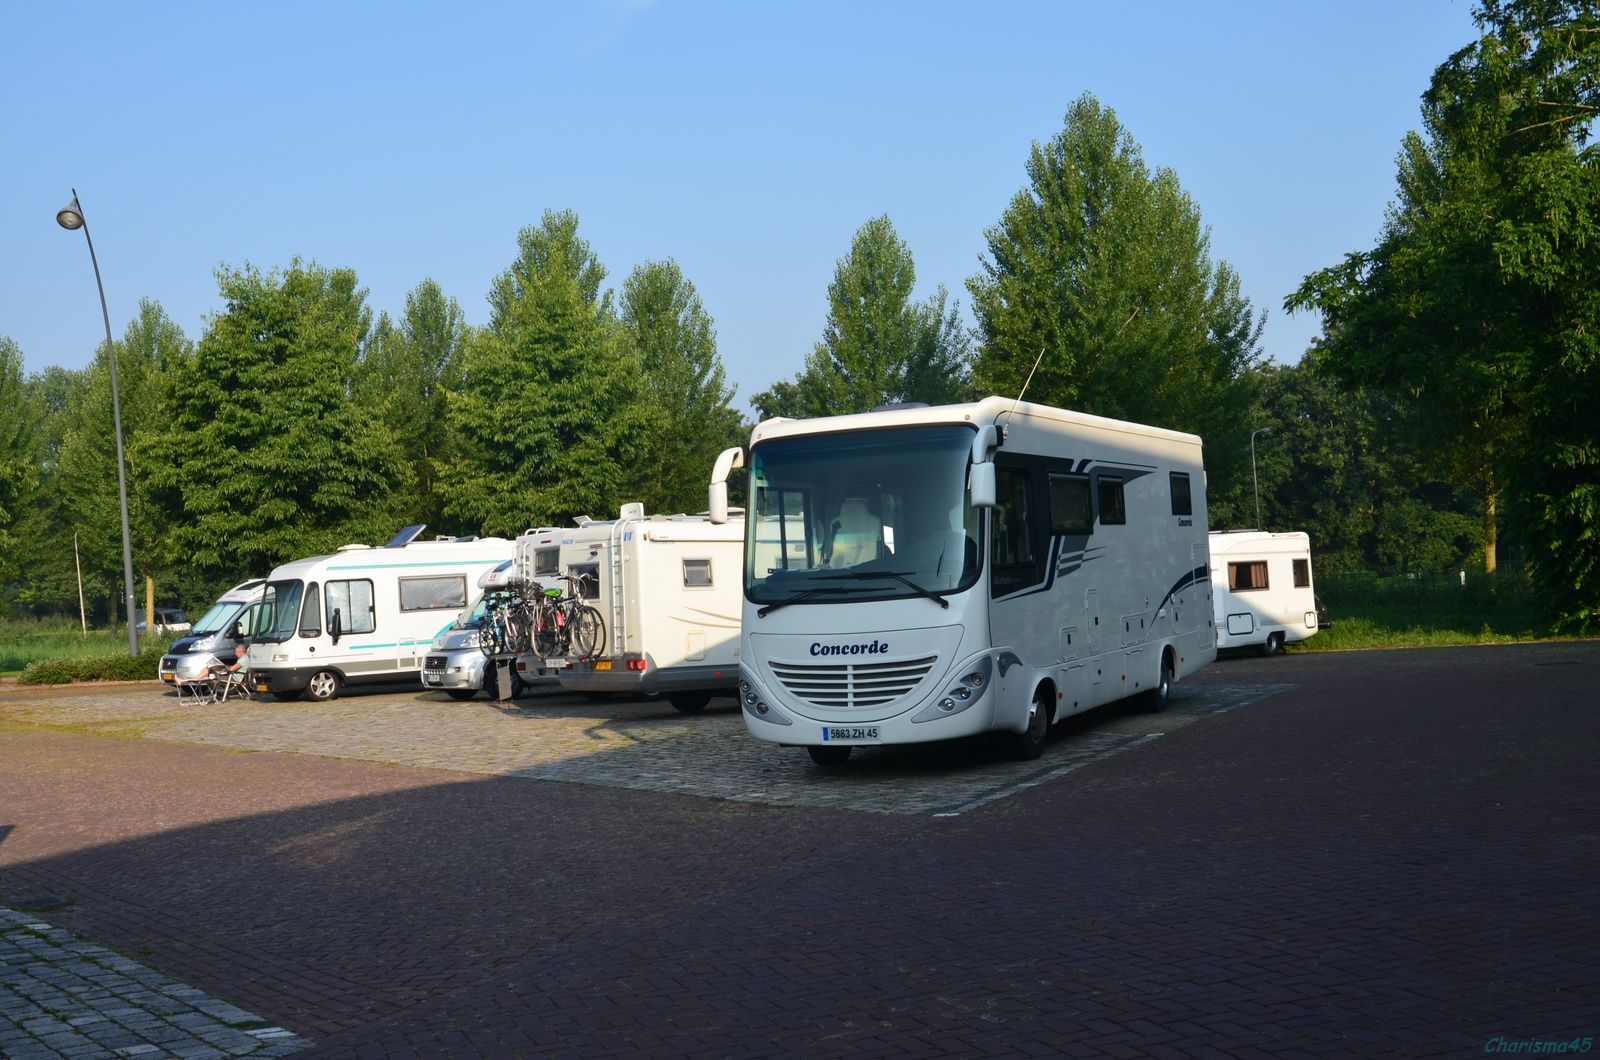 Urk (Pays-bas en camping-car) - Le blog de charisma45